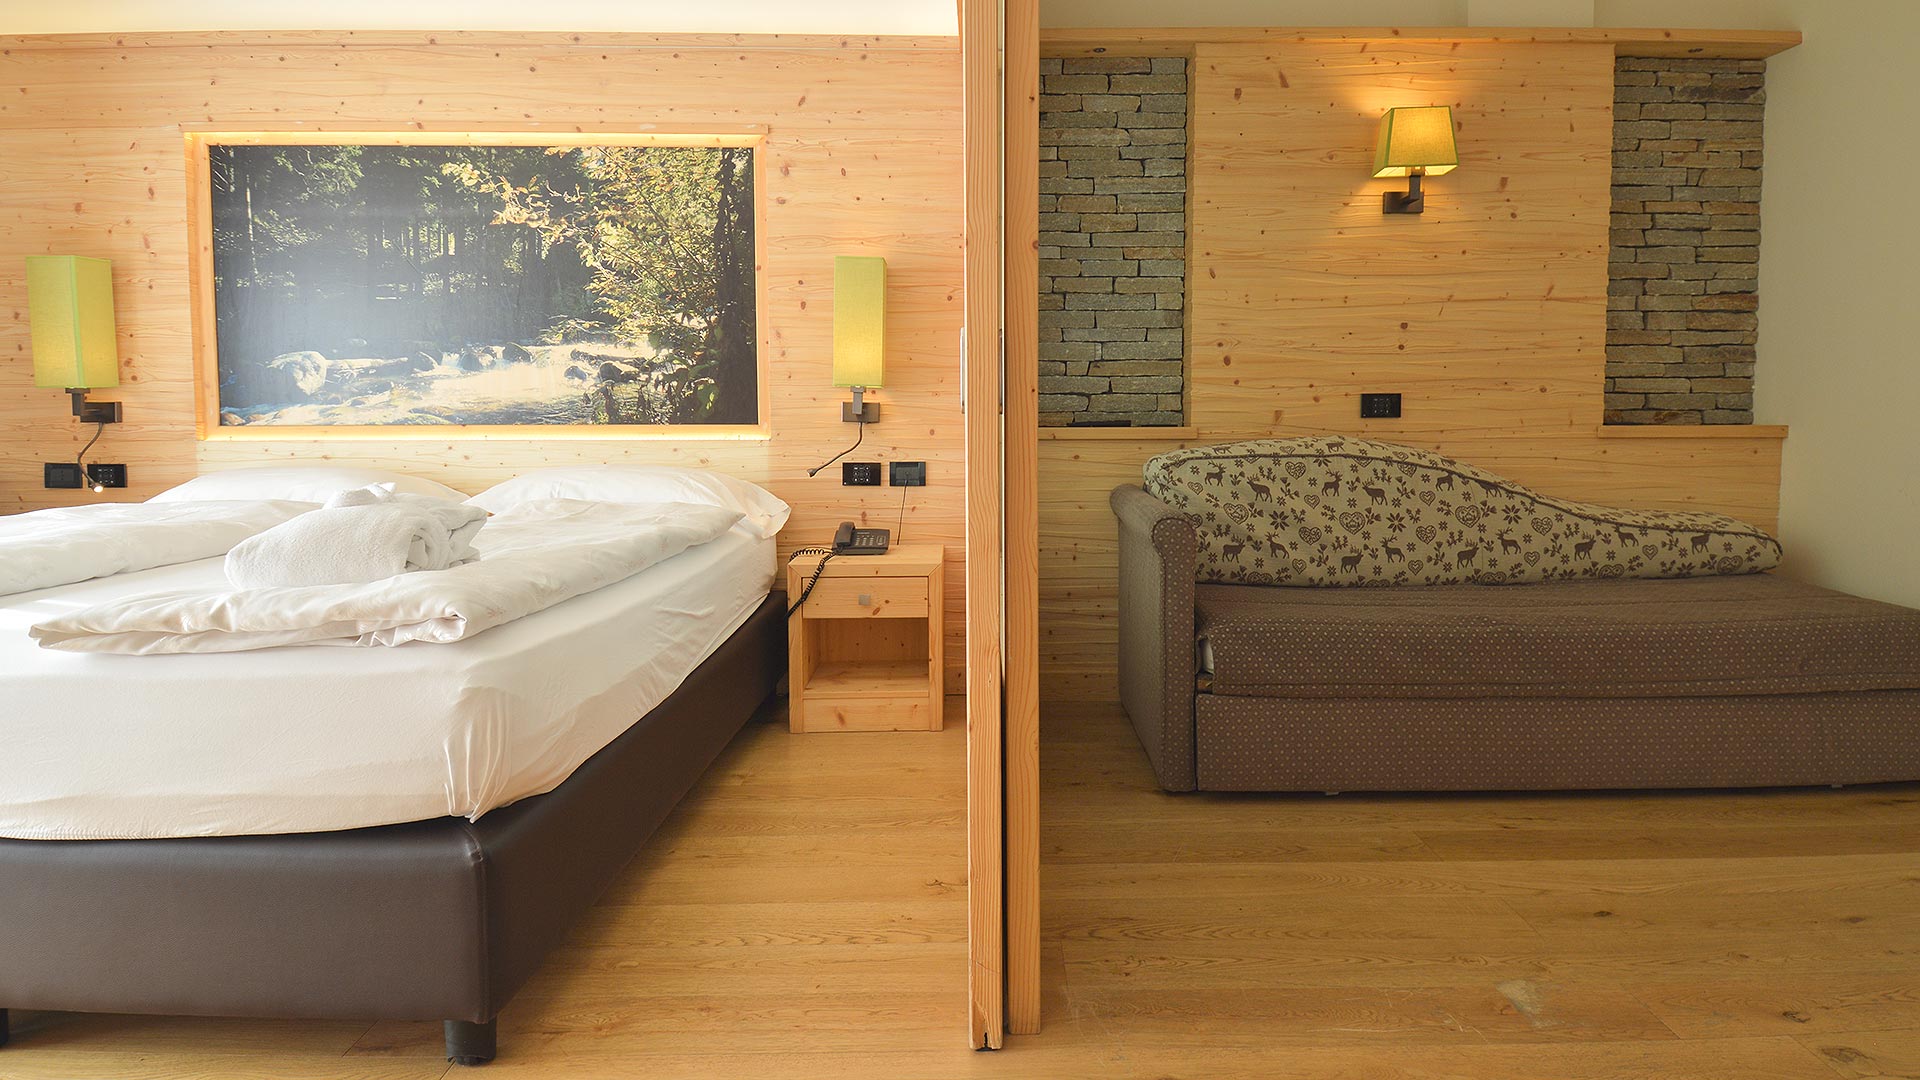 Für einen unvergesslichen Urlaub wählen Sie die Design-Relax-Kombination unserer Unterkunft im Val di Sole.